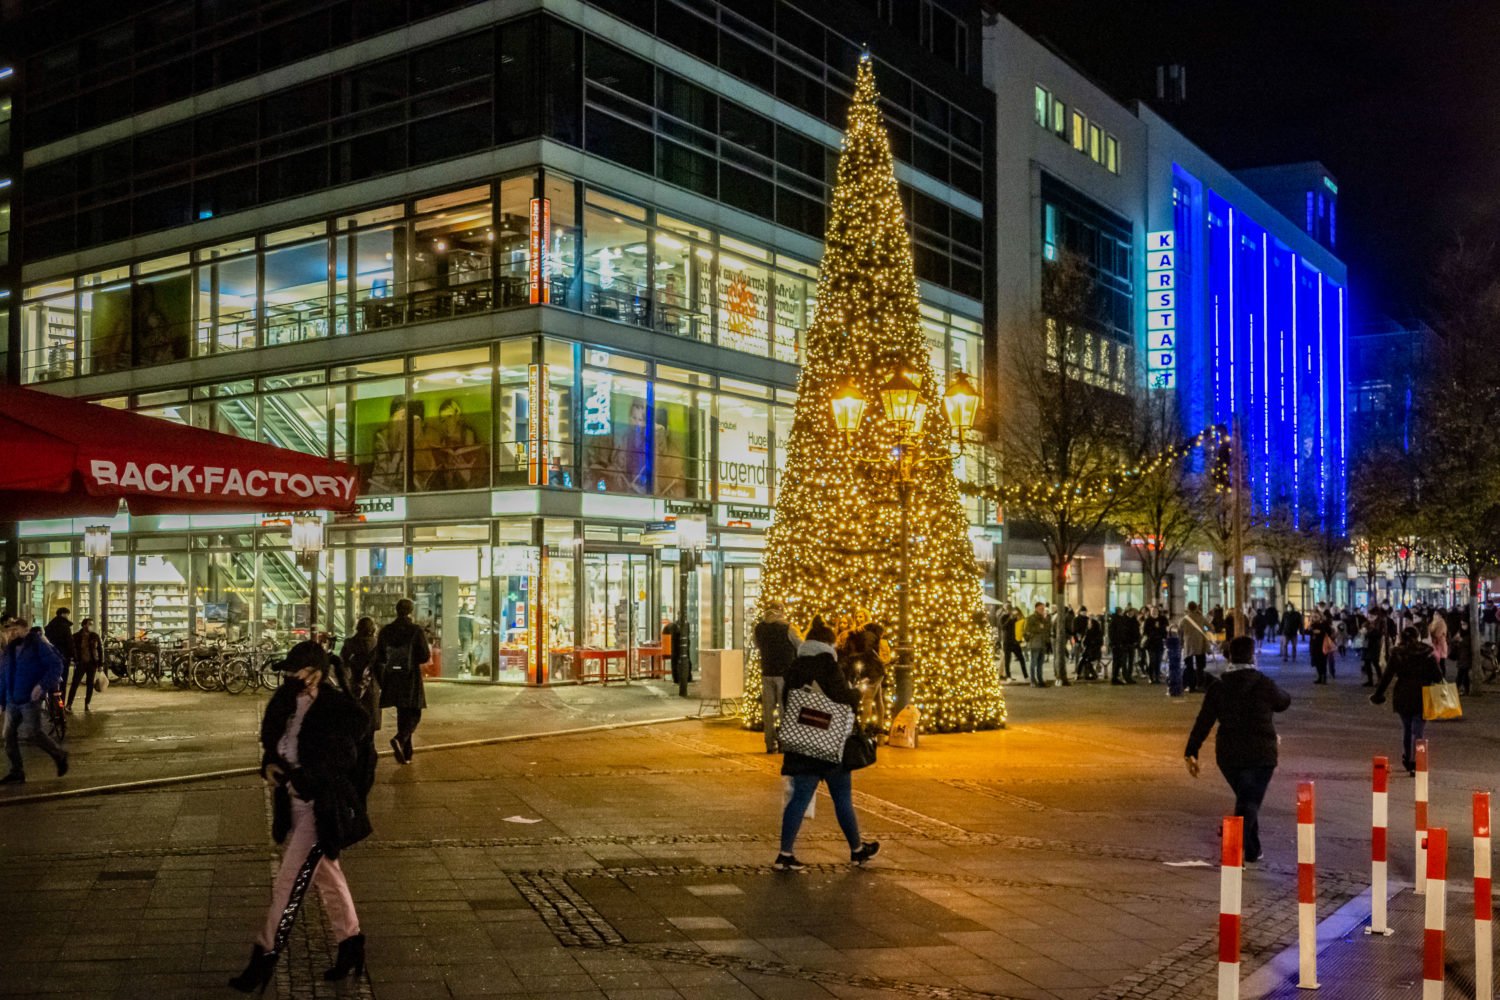 Weihnachten Fotos Berlin Die Wilmersdorfer Straße gehört zu den kleineren Shoppingmeilen Berlins, dennoch wurden dort einige Weihnachtsbäume aufgestellt. In vielen Geschäften sind zudem die Schaufenster liebevoll gestaltet. Foto: Imago Images/Zeitz